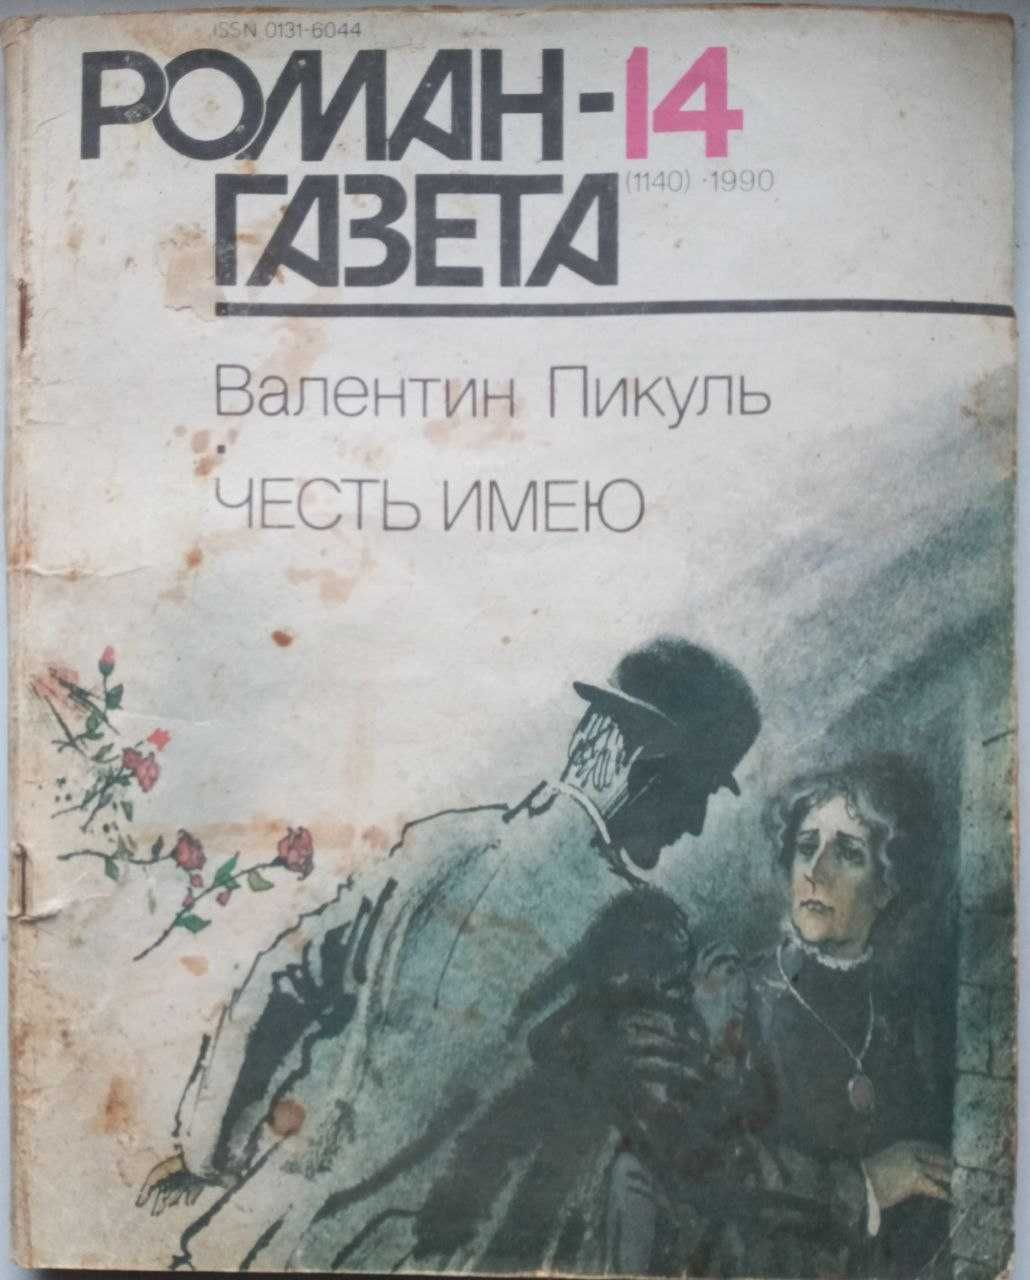 Роман-газета "Честь имею" В. Пикуль, 2-х томник.